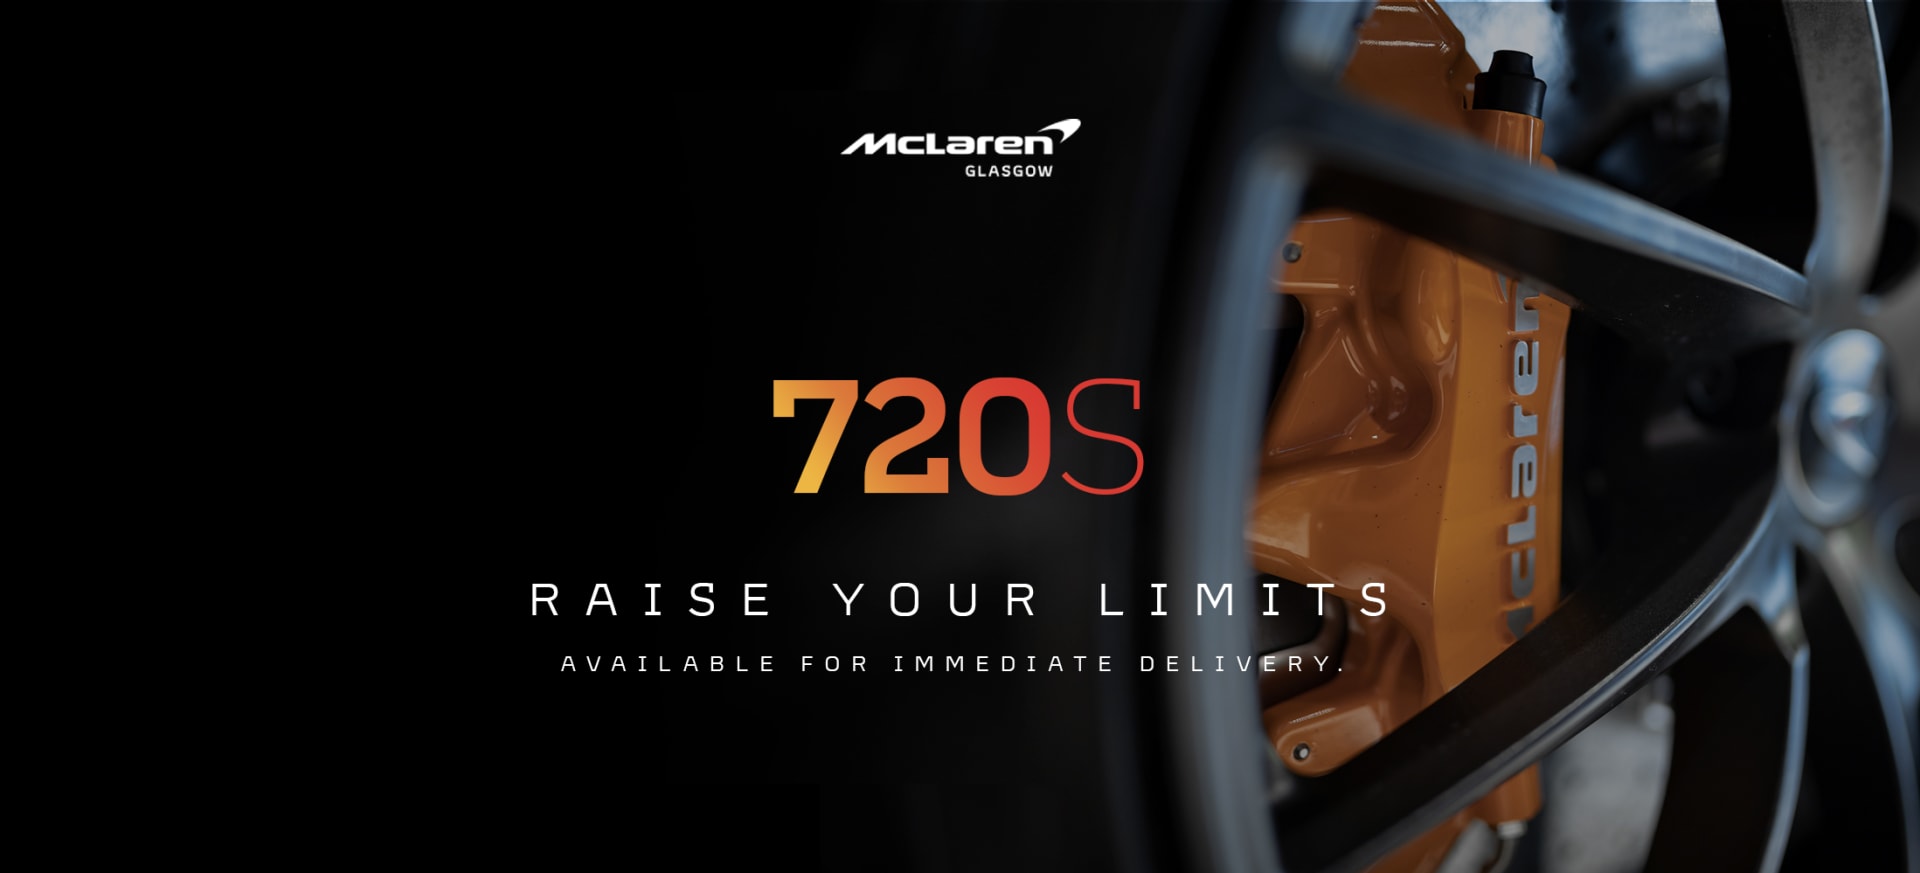 McLaren Glasgow 720s Raise Your Limits Stock Campaign